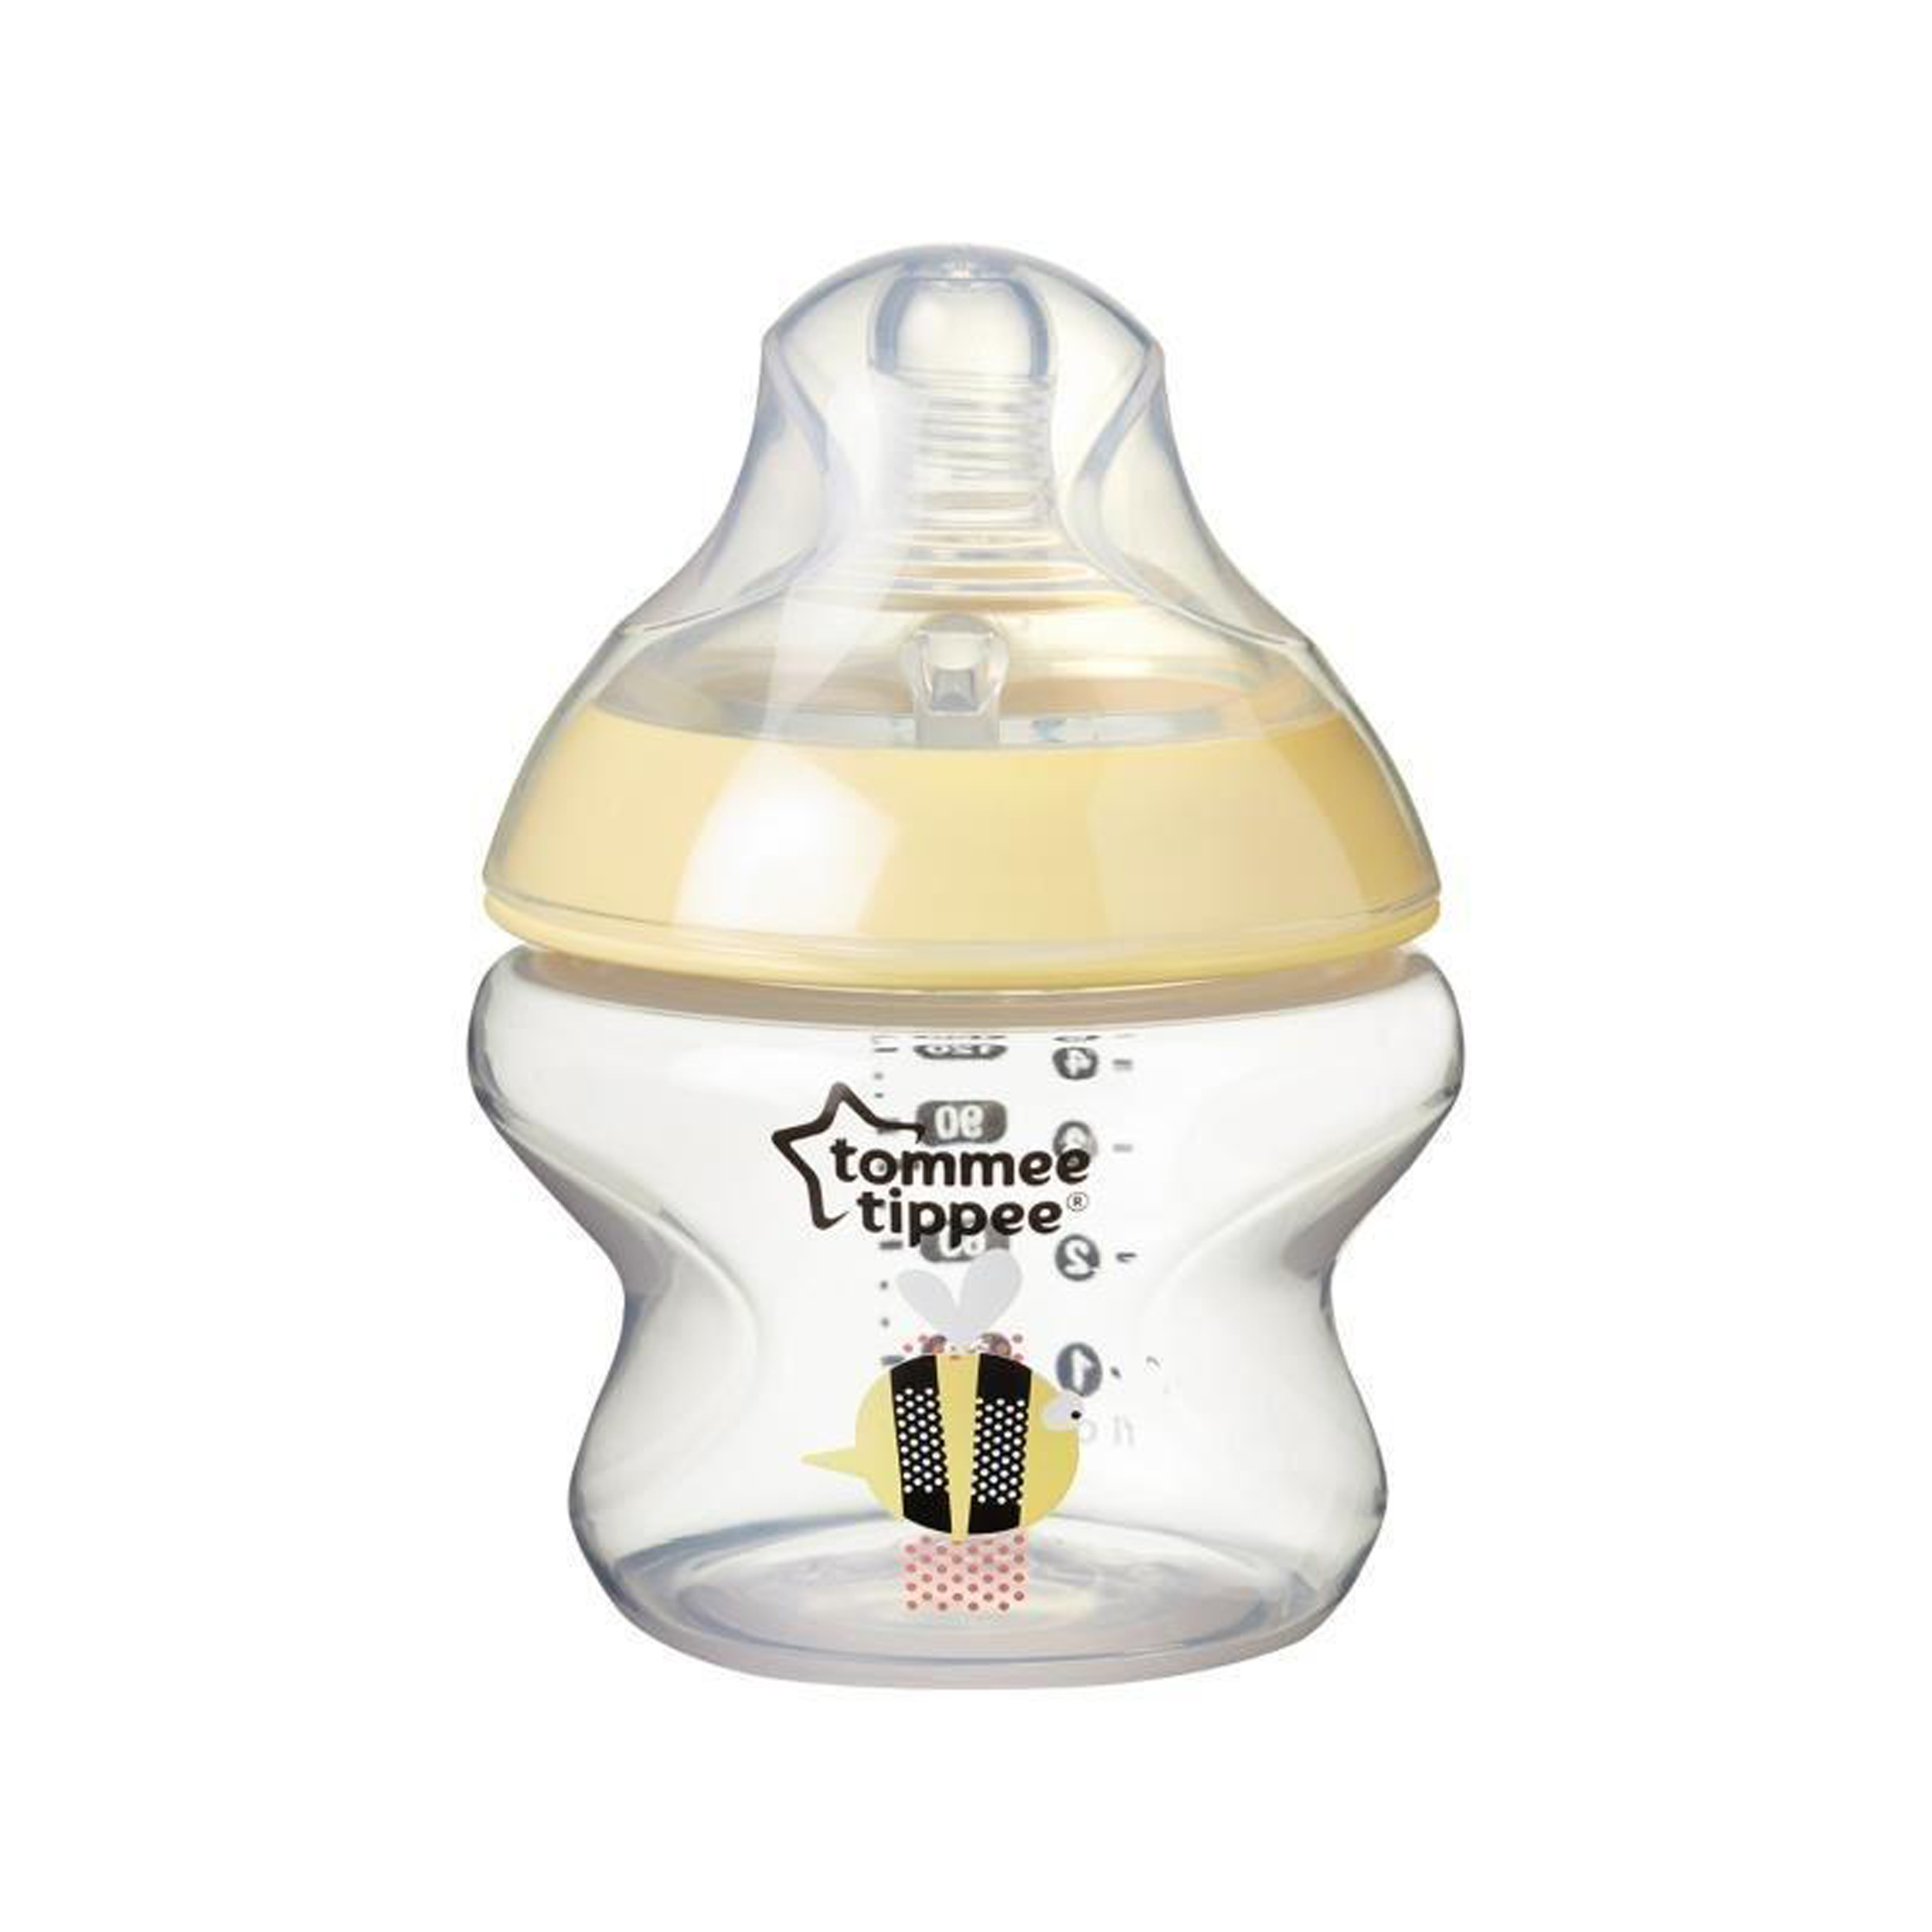 نکته خرید - قیمت روز شیشه شیر تامی تیپی مدل T42270185 گنجایش 150میلی لیتر خرید